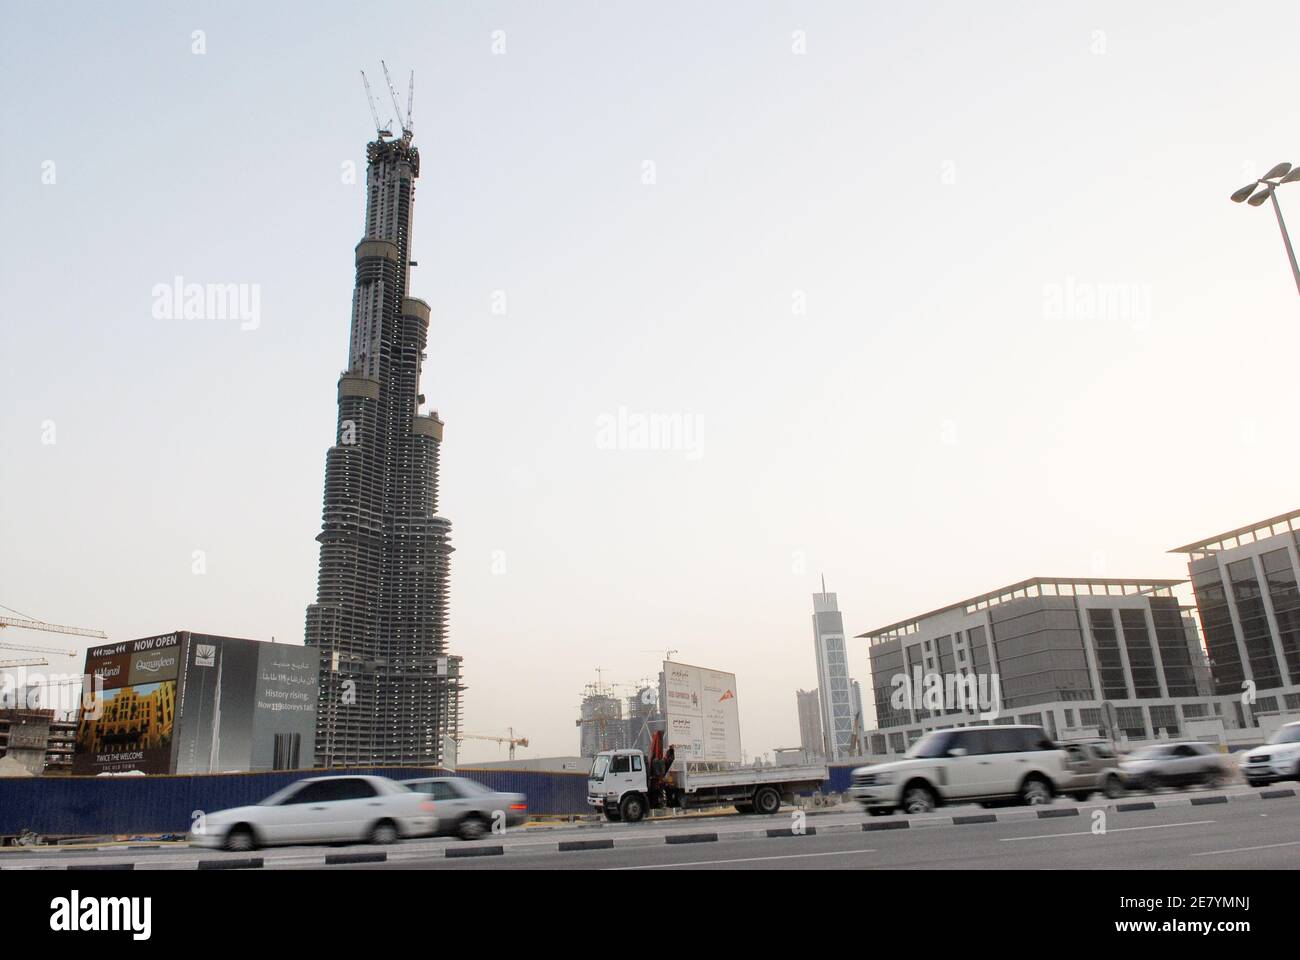 'Bubai's Burj Dubai' è già la struttura più alta del Medio Oriente e dell'Europa, e ora ha più piani di qualsiasi edificio al mondo, secondo una dichiarazione della casa costruttrice Emaar l'8 aprile 2007. Attualmente a 120 piani e 422,5 metri di altezza, l'edificio Emaar Properties è anche una delle cinque strutture più alte del mondo. L'iconica torre di Dubai è oggi più alta dell'Empire state Building (381 metri) di New York e del John Hancock Center (344 metri) di Chicago, due degli unici cinque edifici completati che hanno 100 piani o più. Progettato da Skidmore, Owings &, con sede a Chicago Foto Stock